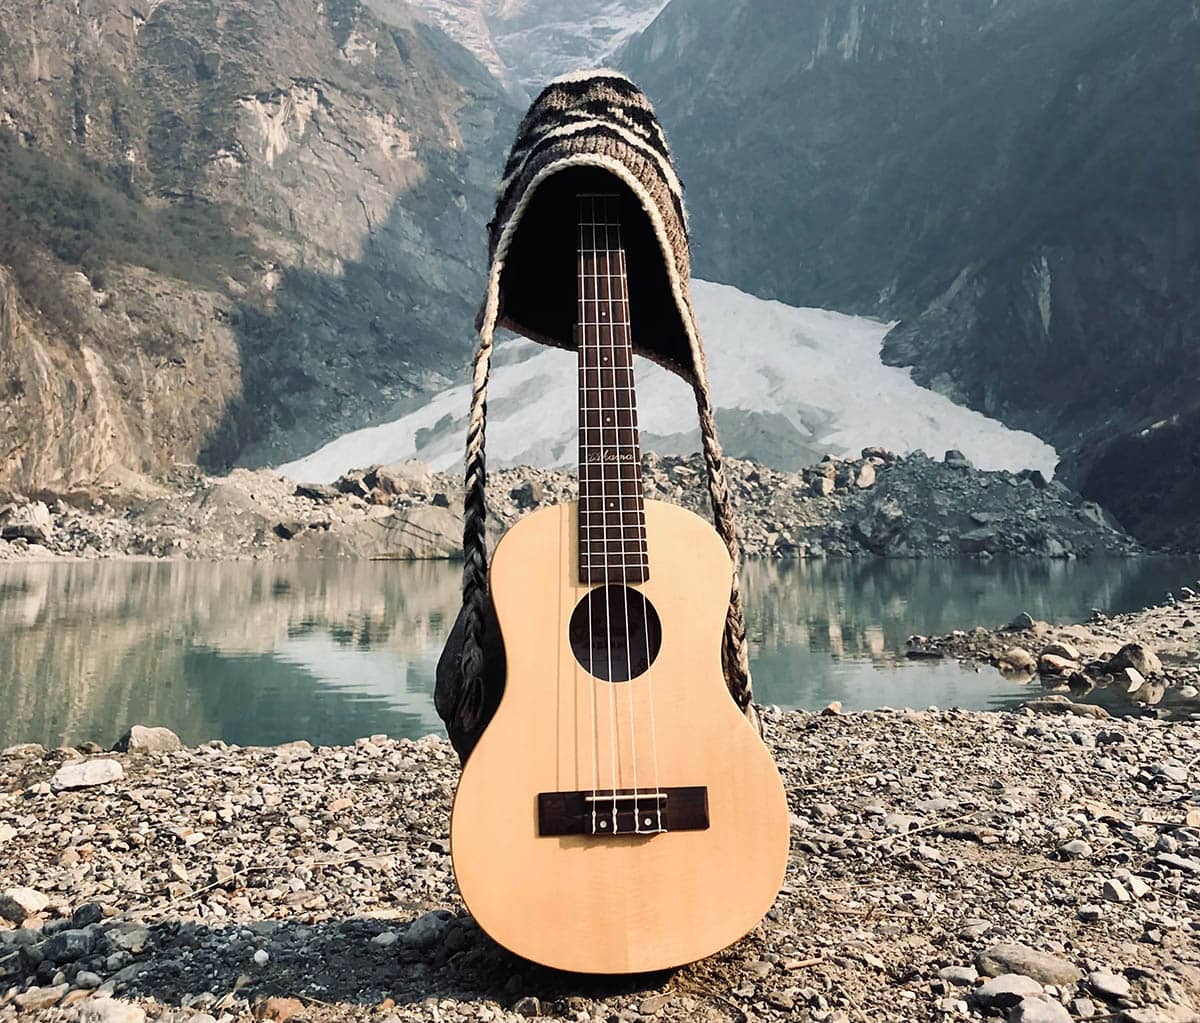 guitare acoustique marron sur un quai en bois marron près d'un lac et d'une montagne couverte de neige pendant la journée